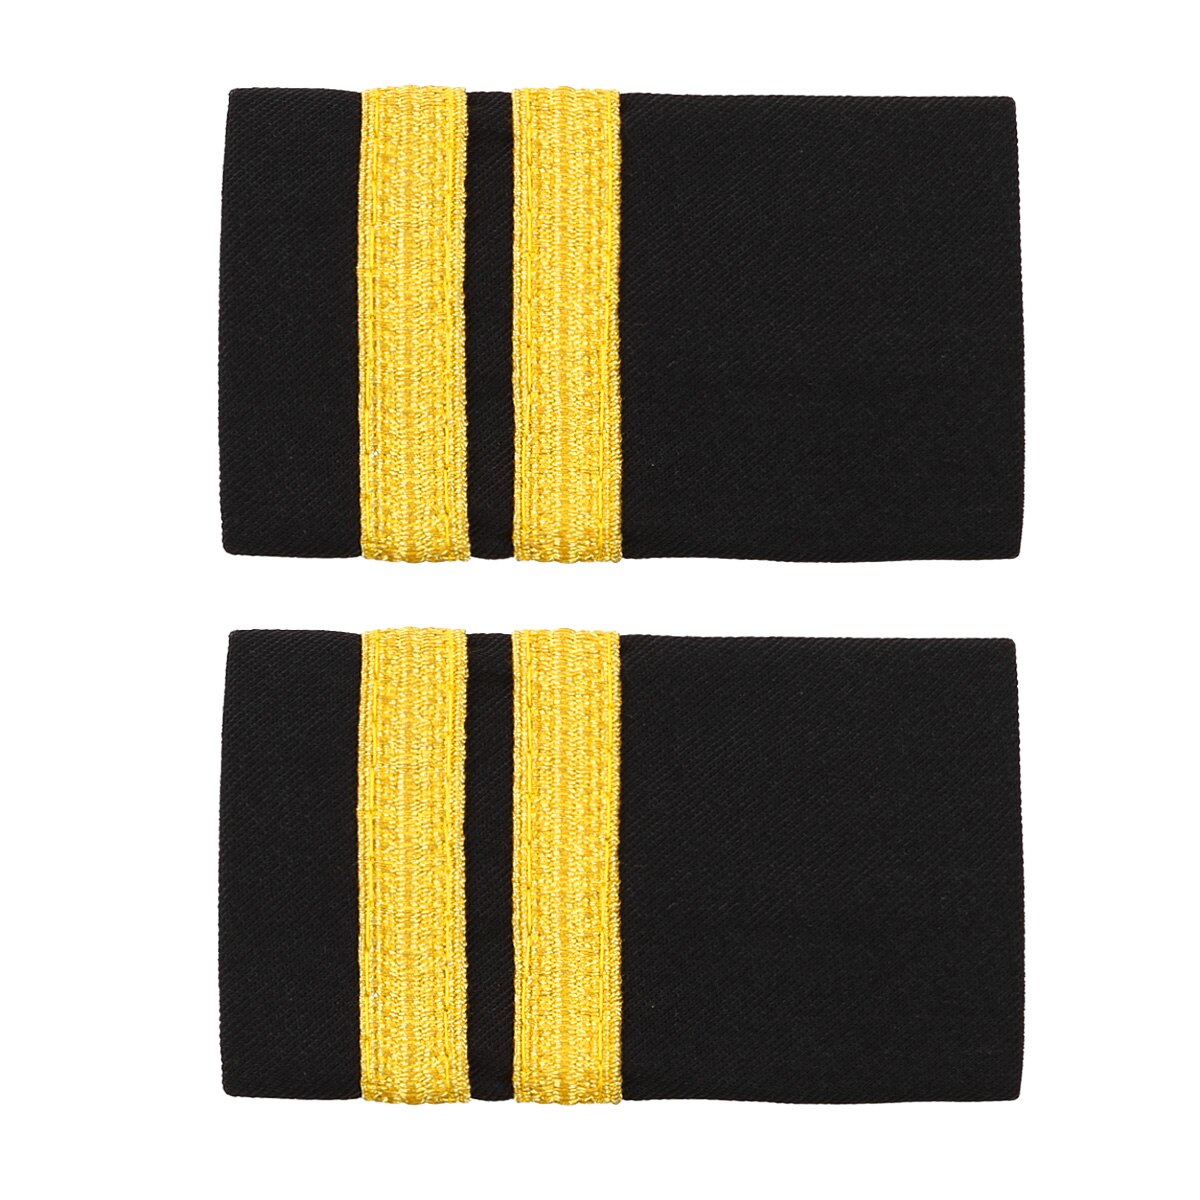 1 paar Traditionellen Uniform Dekor Epauletten Professionelle Pilot Shirt Epauletten DIY Gold Streifen Schulter Bord Abzeichen für Kleidung: Schwarz Gold zwei